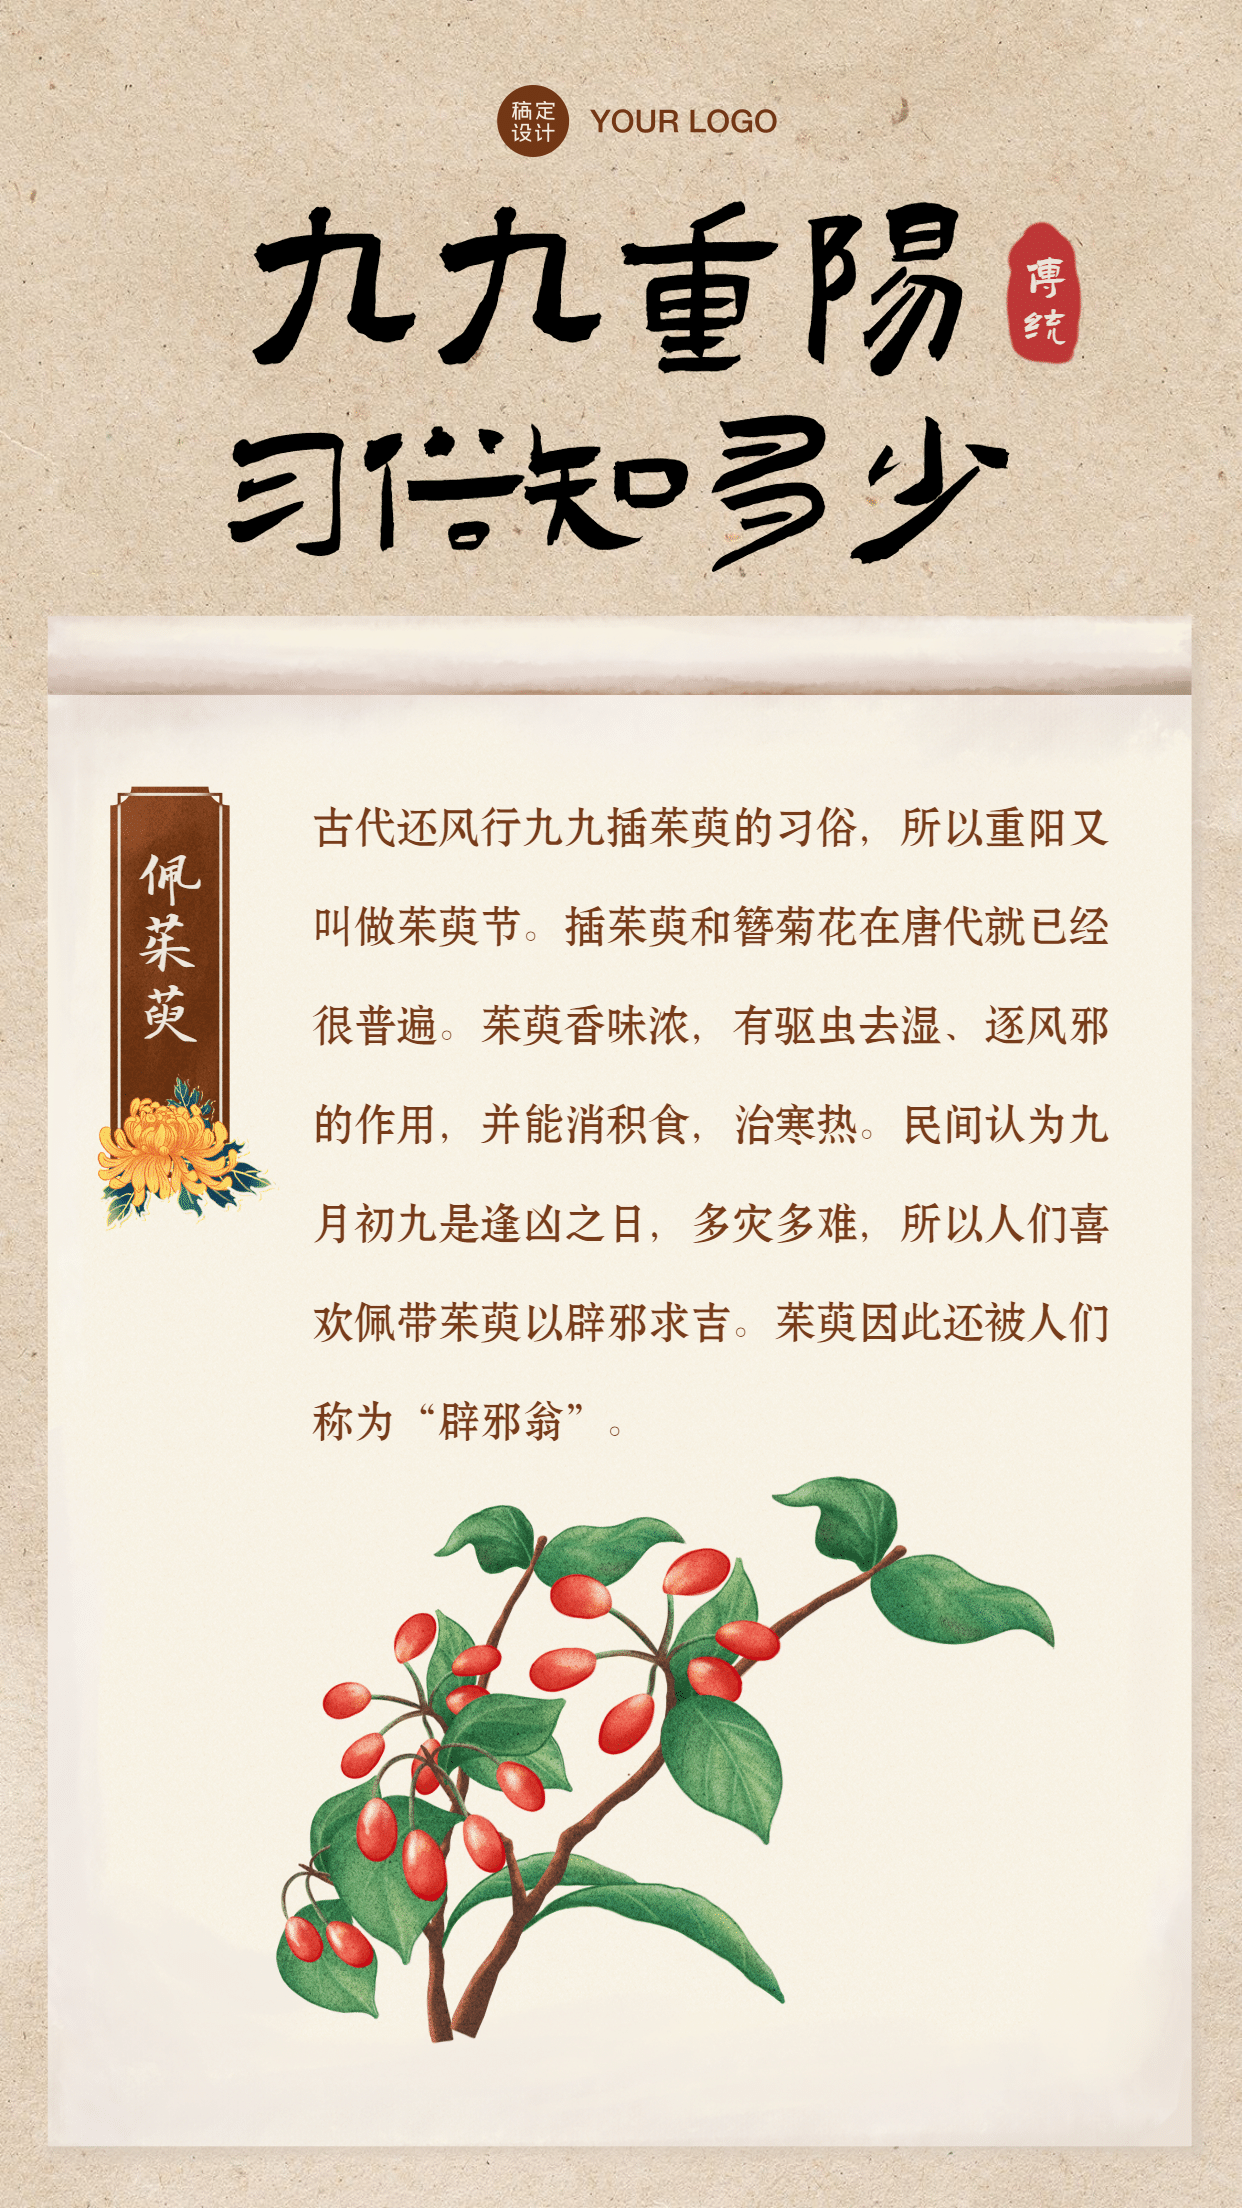 重阳节习俗科普佩茱萸中国风手机海报